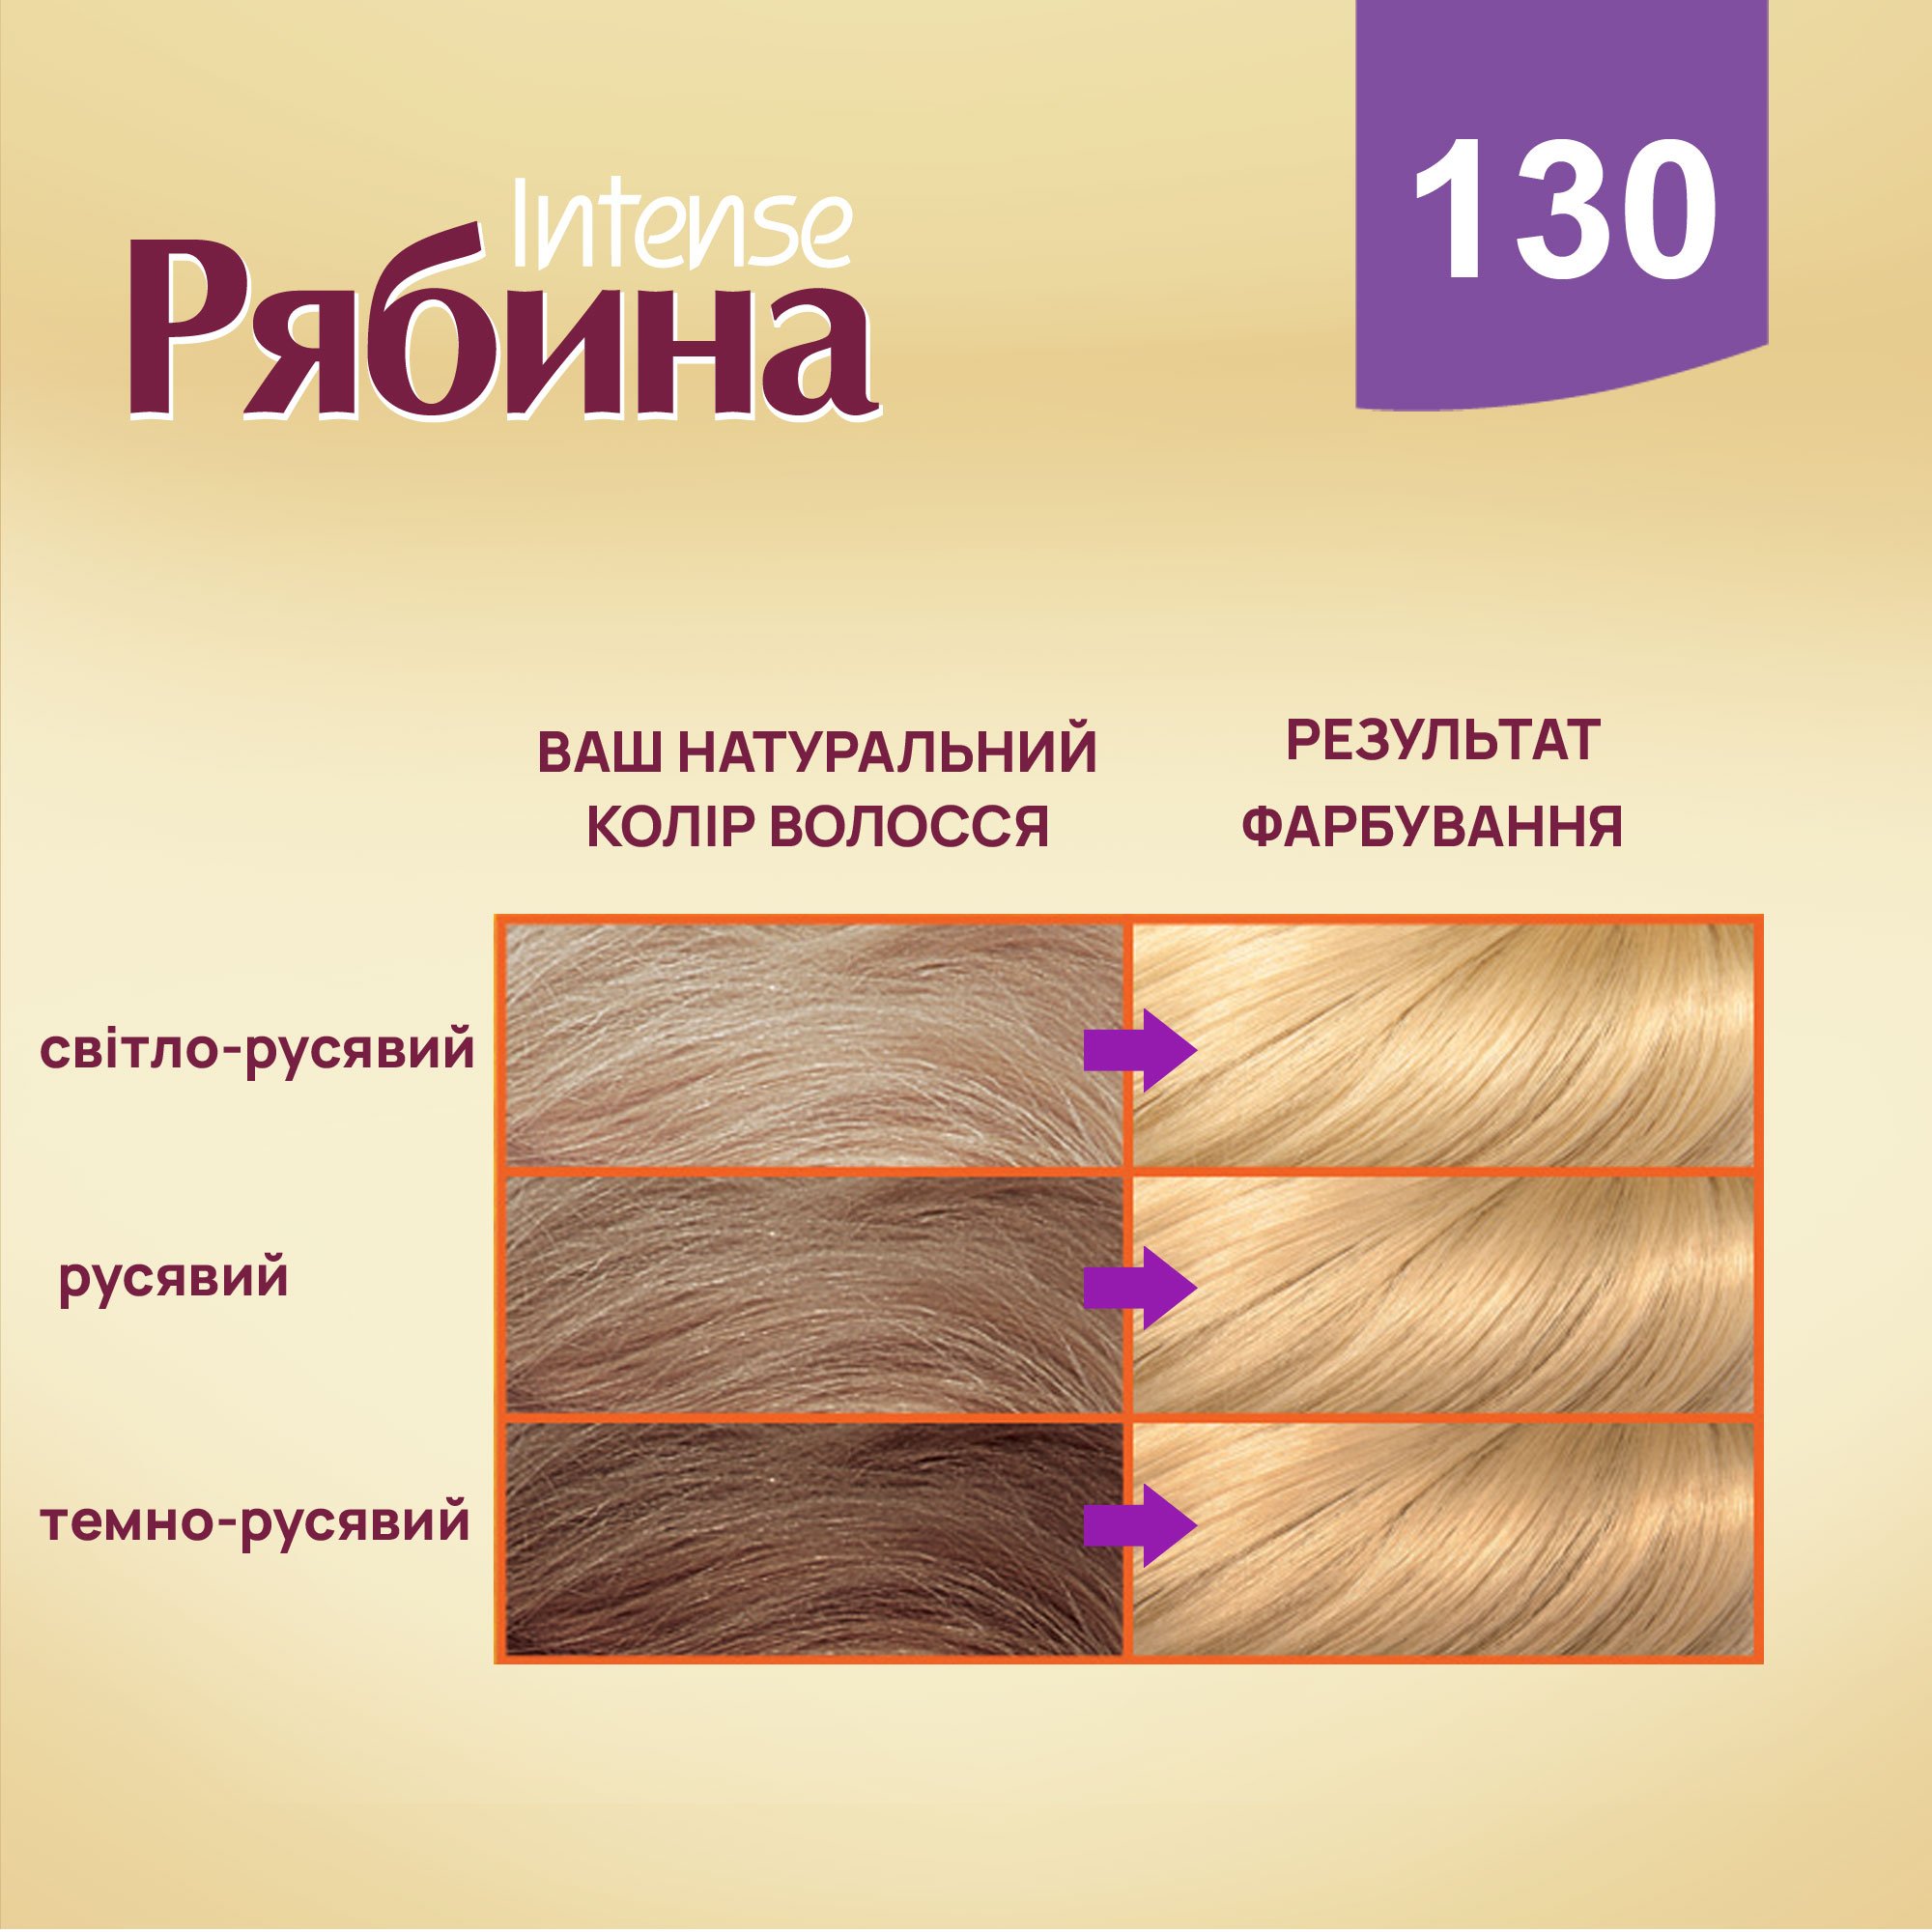 Крем-краска для волос Рябина Intense, оттенок 130 (Пшеница), 138 мл - фото 3